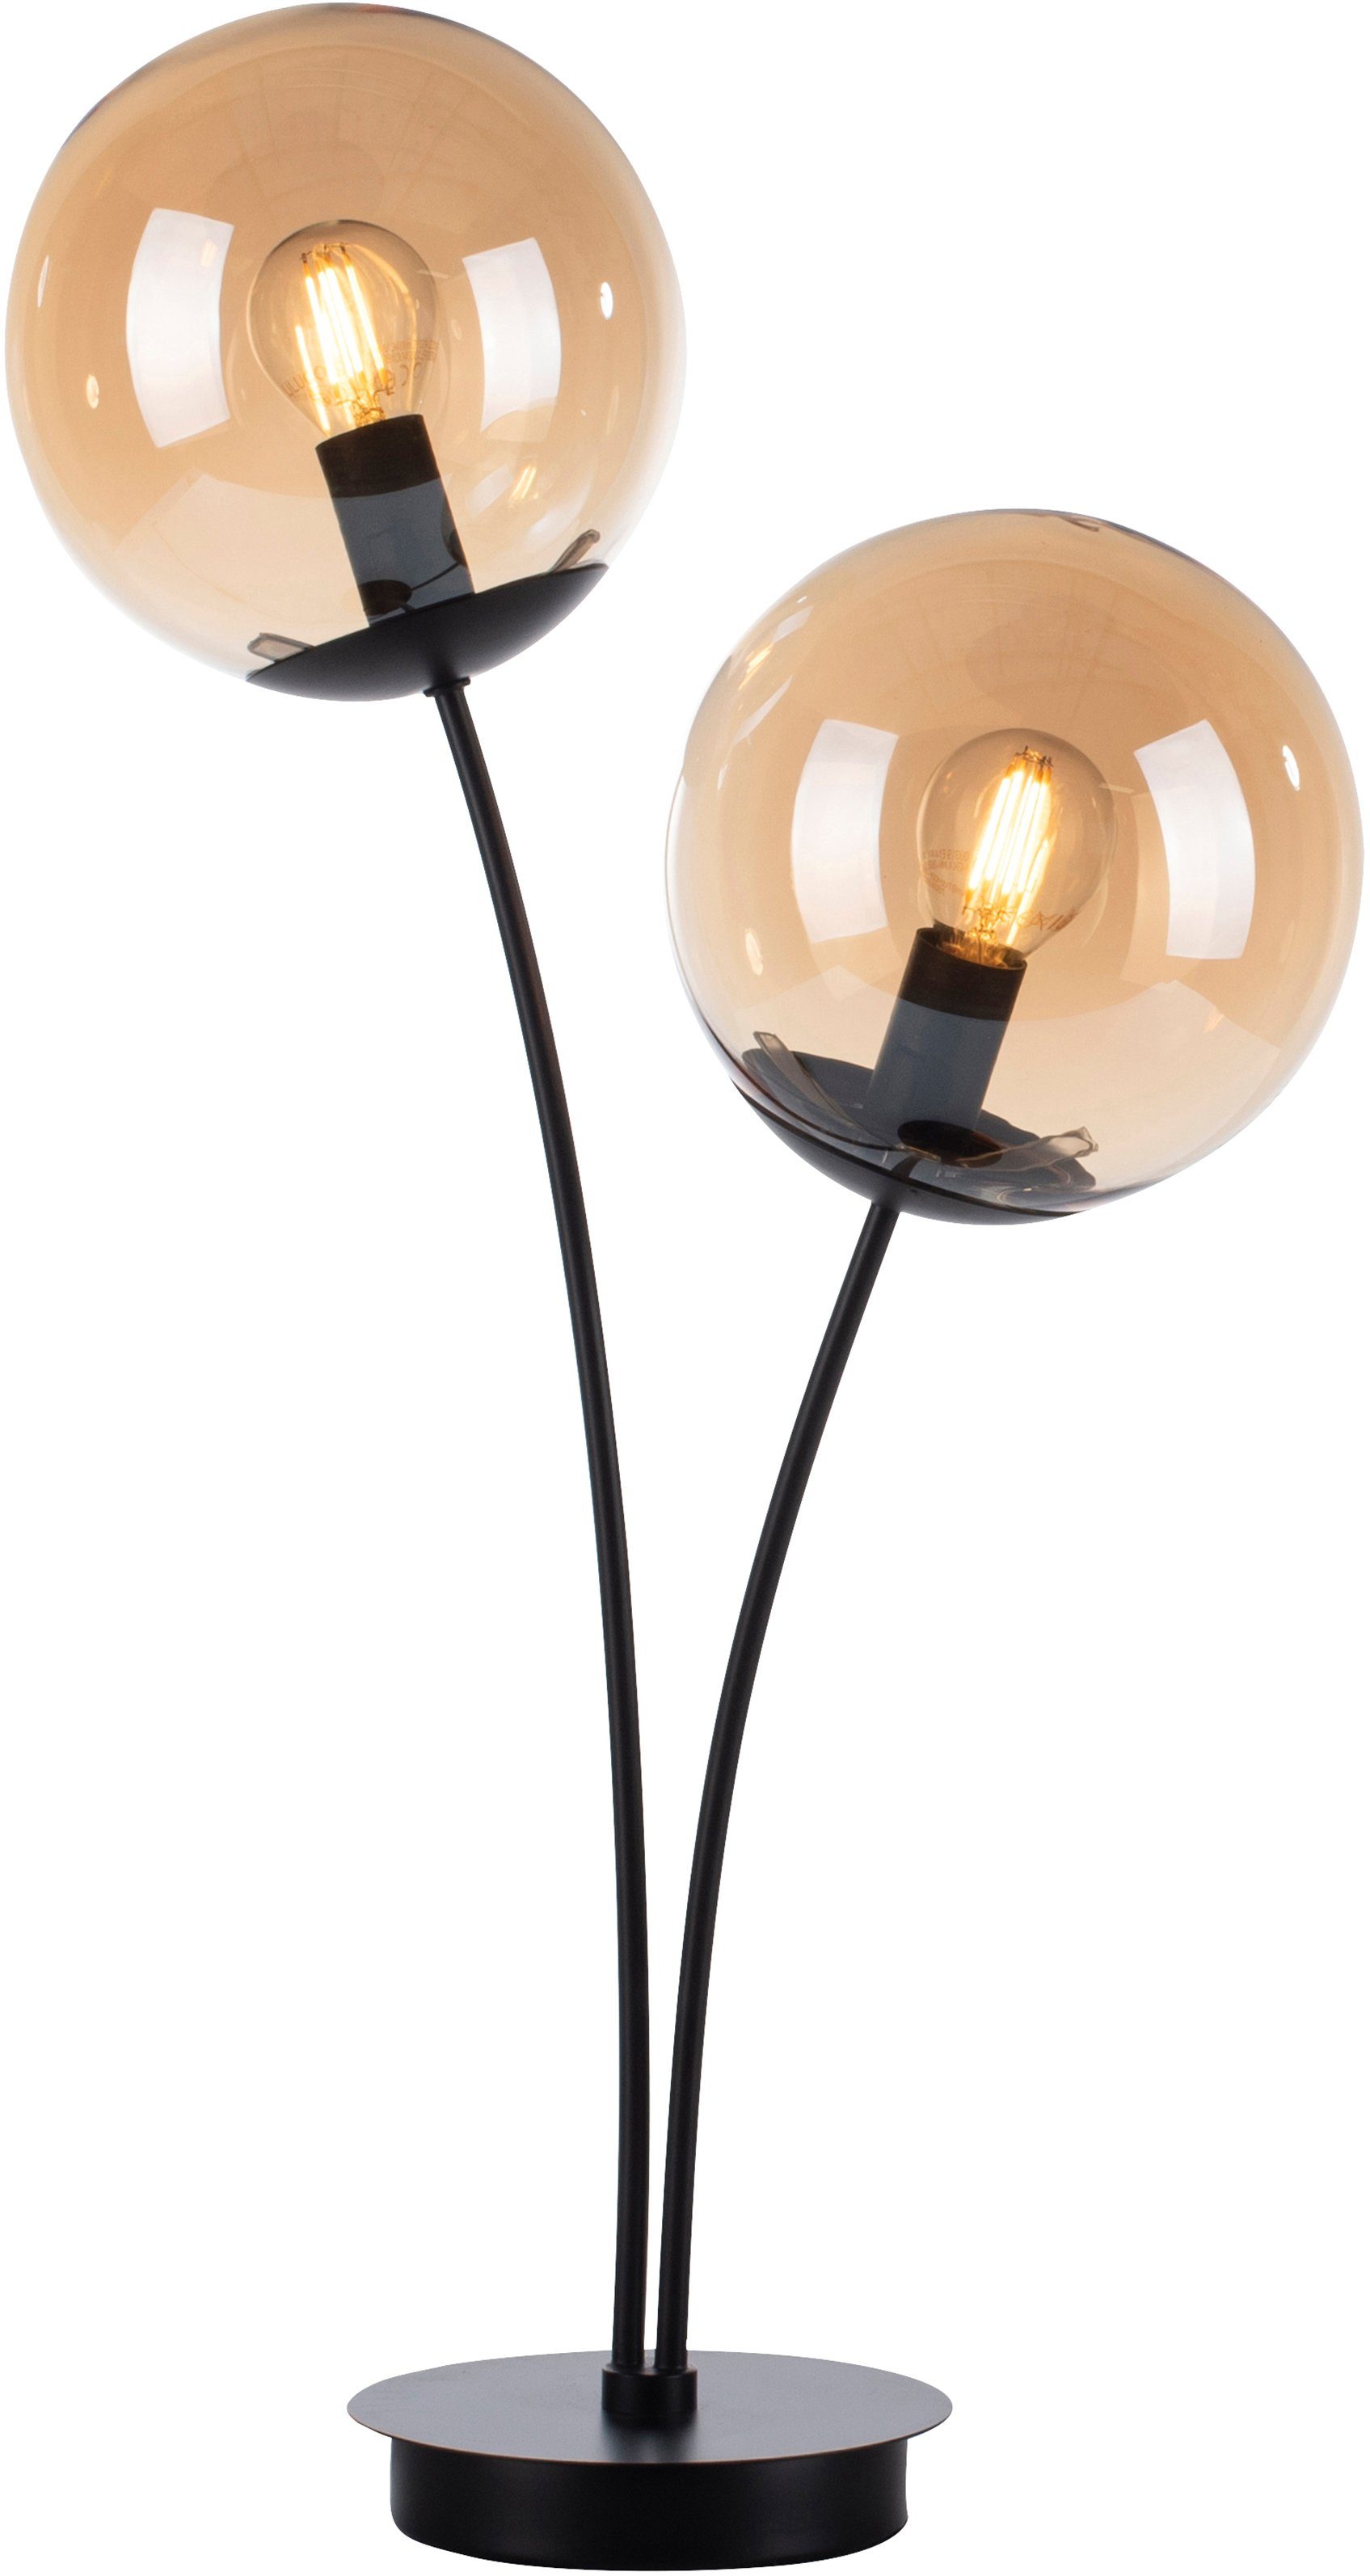 Schnelle Lieferung amberfarbigen schwarz großen Leuchtmittel, Oberfläche mit andas Nymölla, ohne Glaskörpern, Ein-/Ausschalter, Tischleuchte lackiert